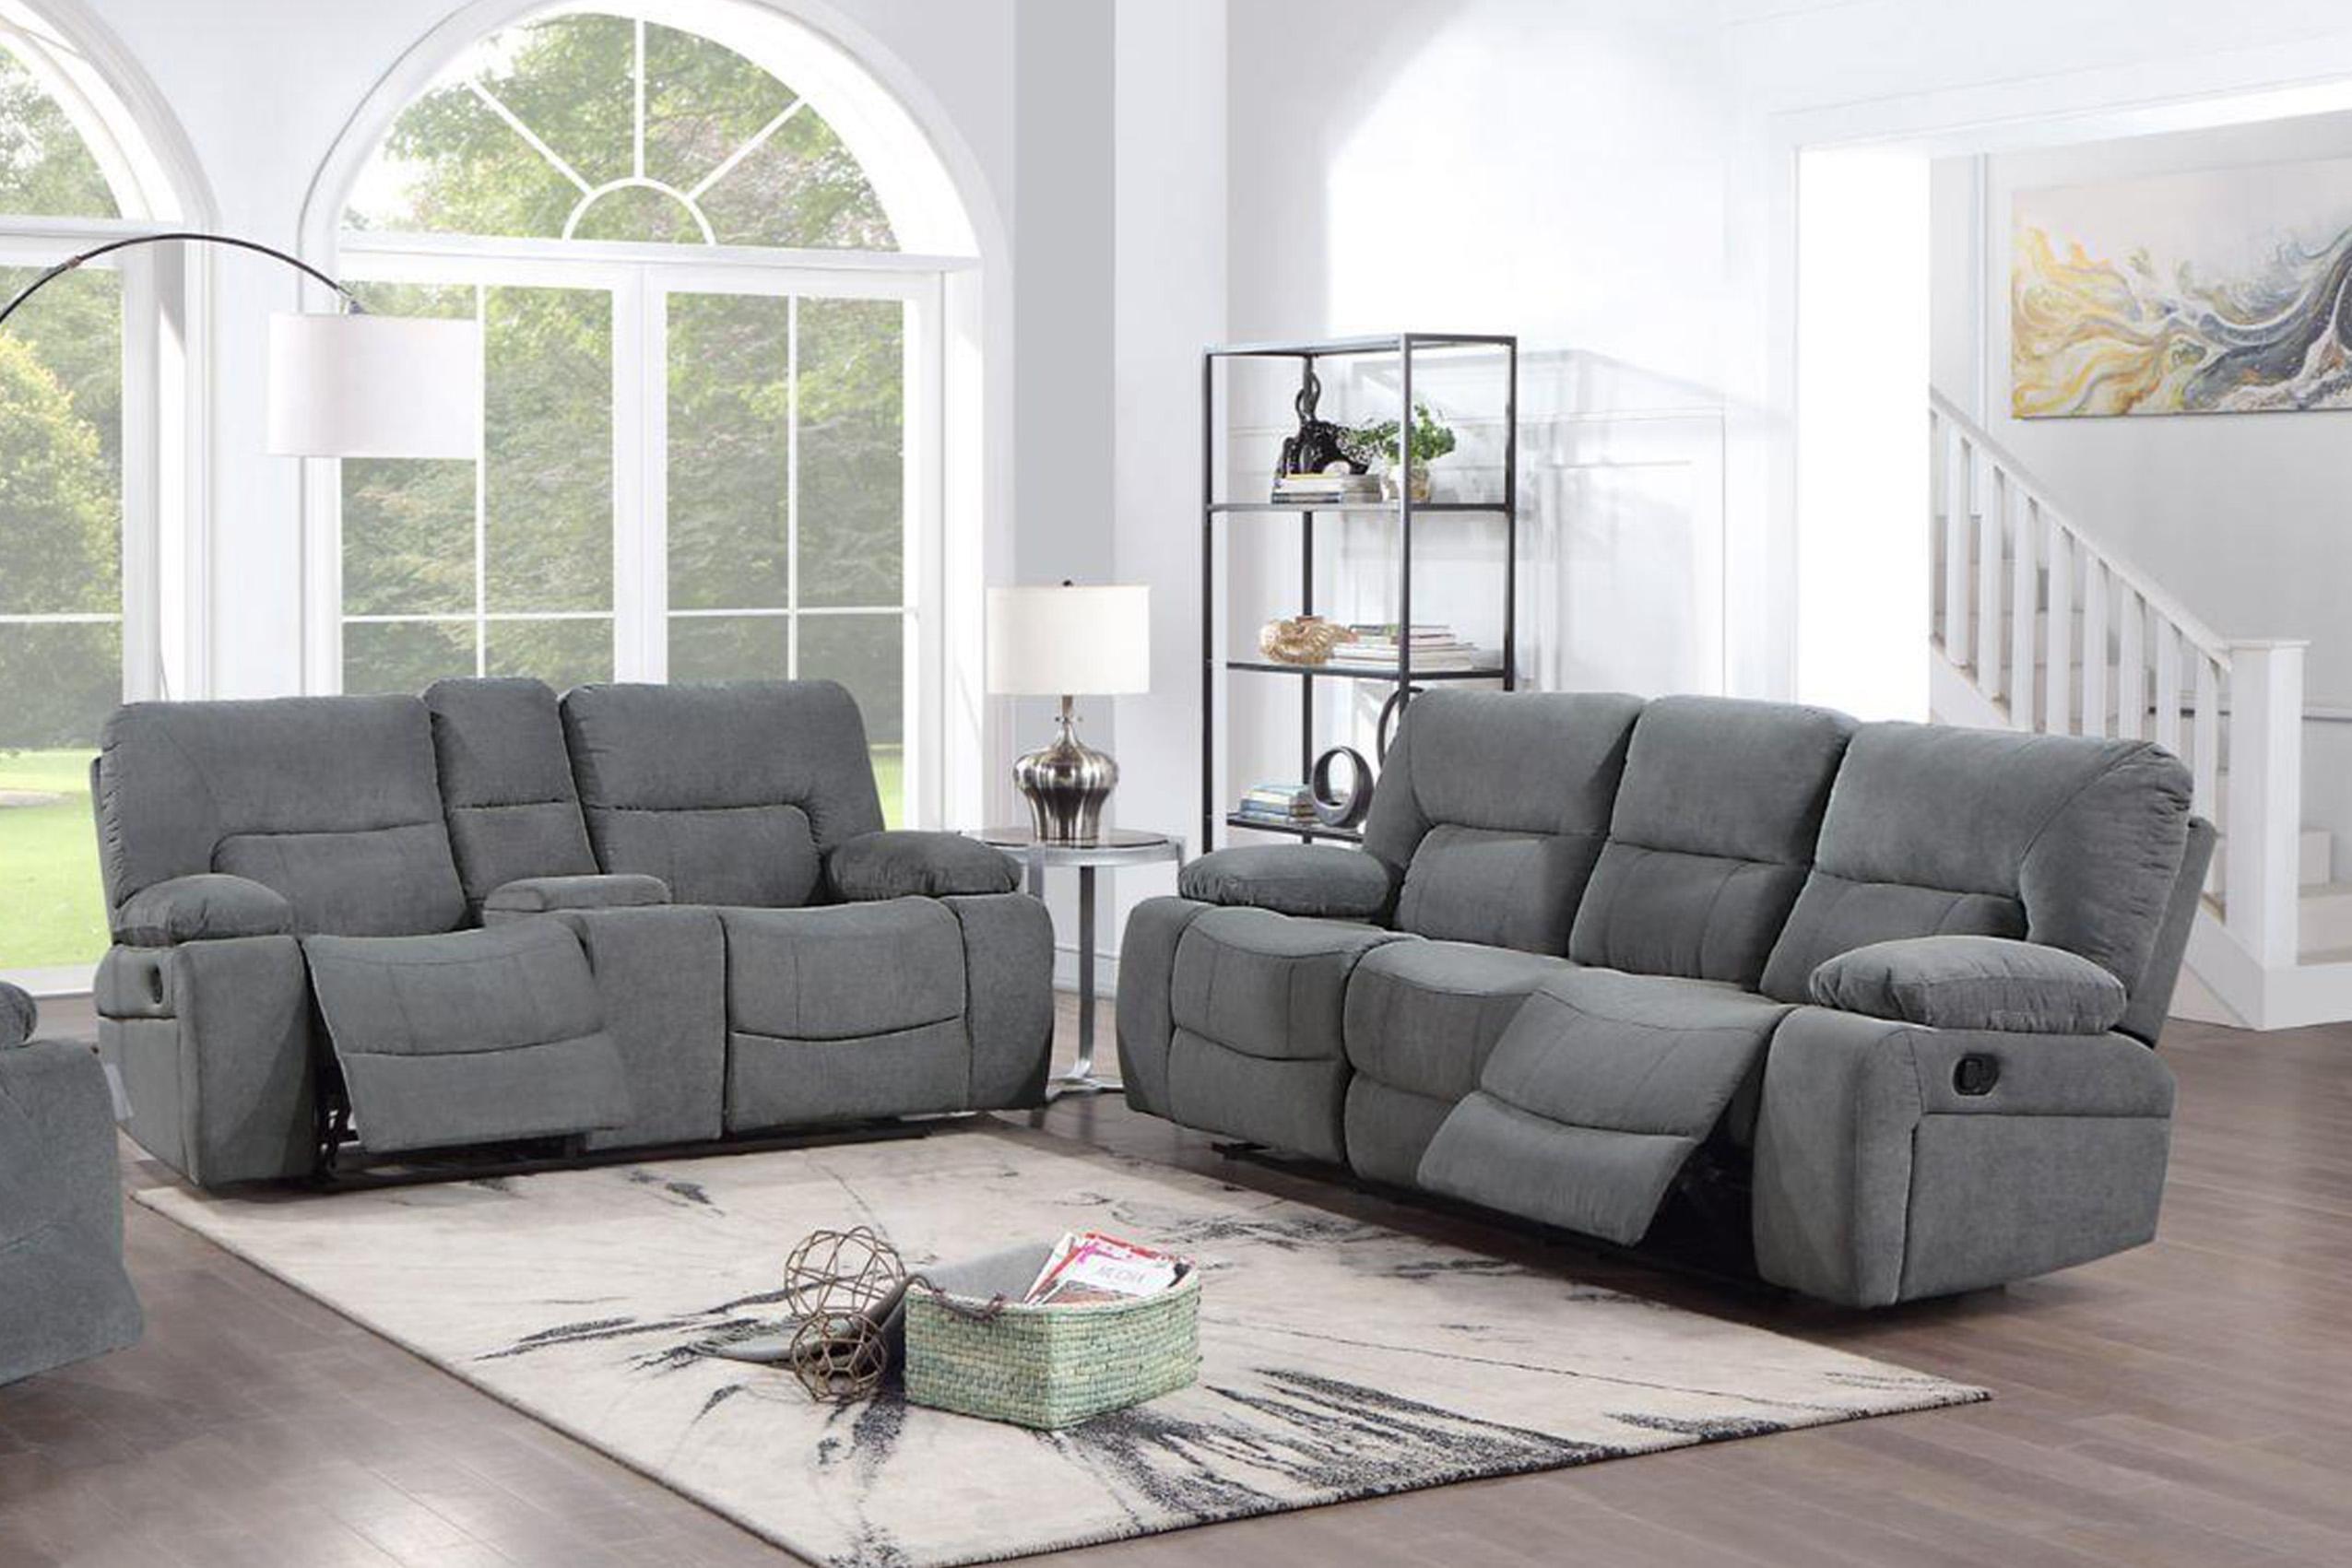 Contemporary, Modern Recliner Sofa Set OHIO-GR OHIO-GR-S-L in Gray Chenille